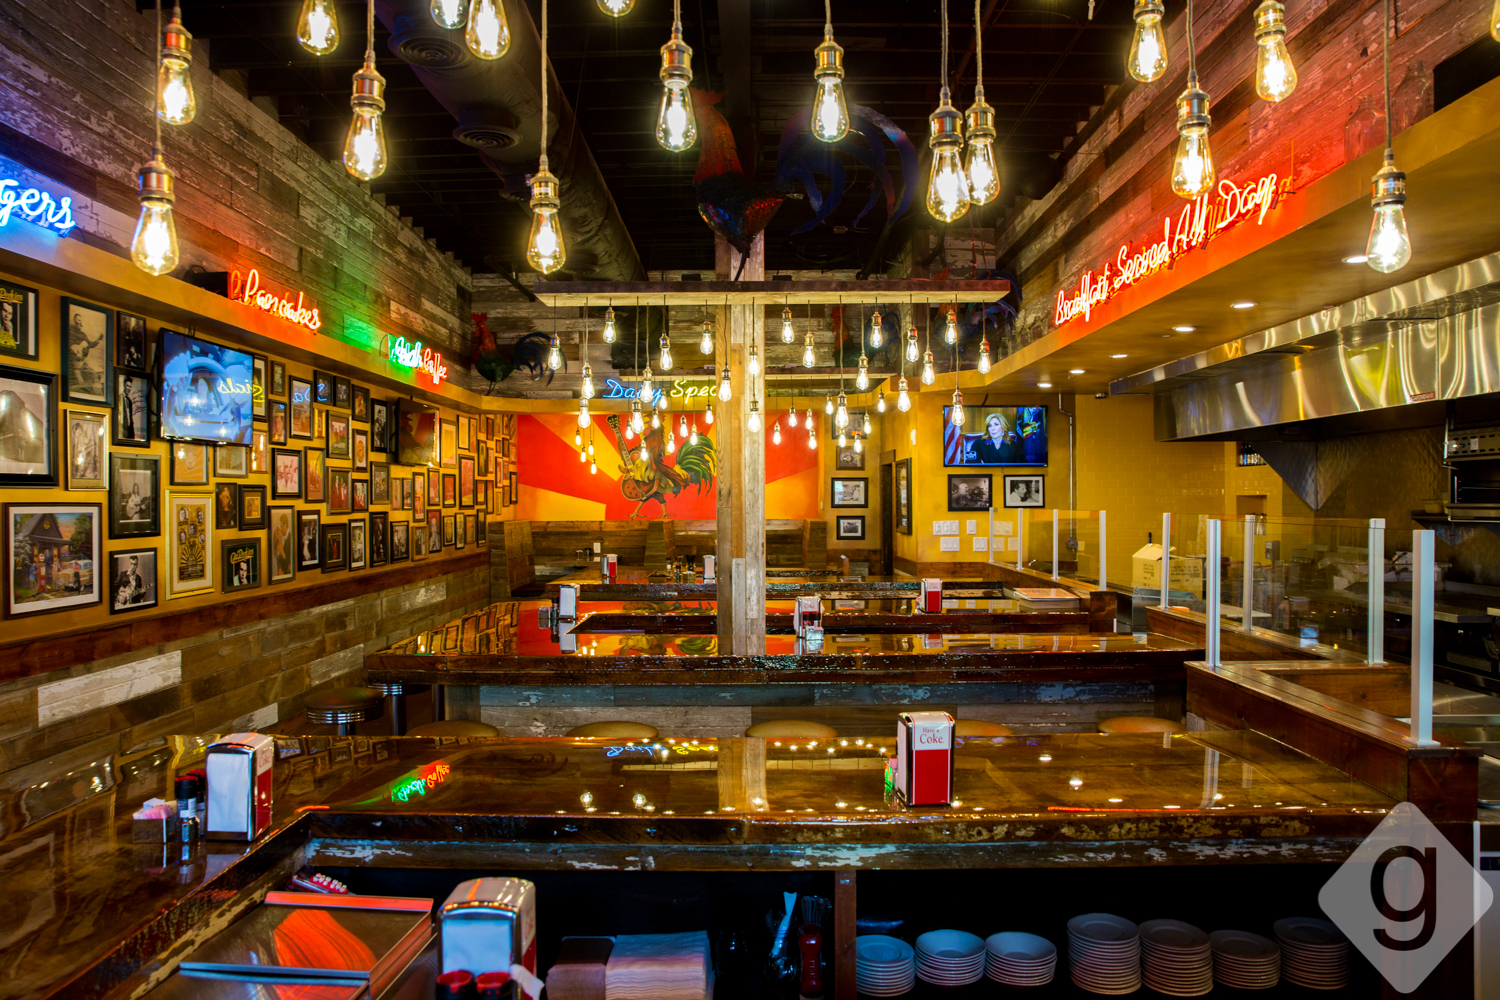 A Look Inside: Sun Diner Café | Nashville Guru